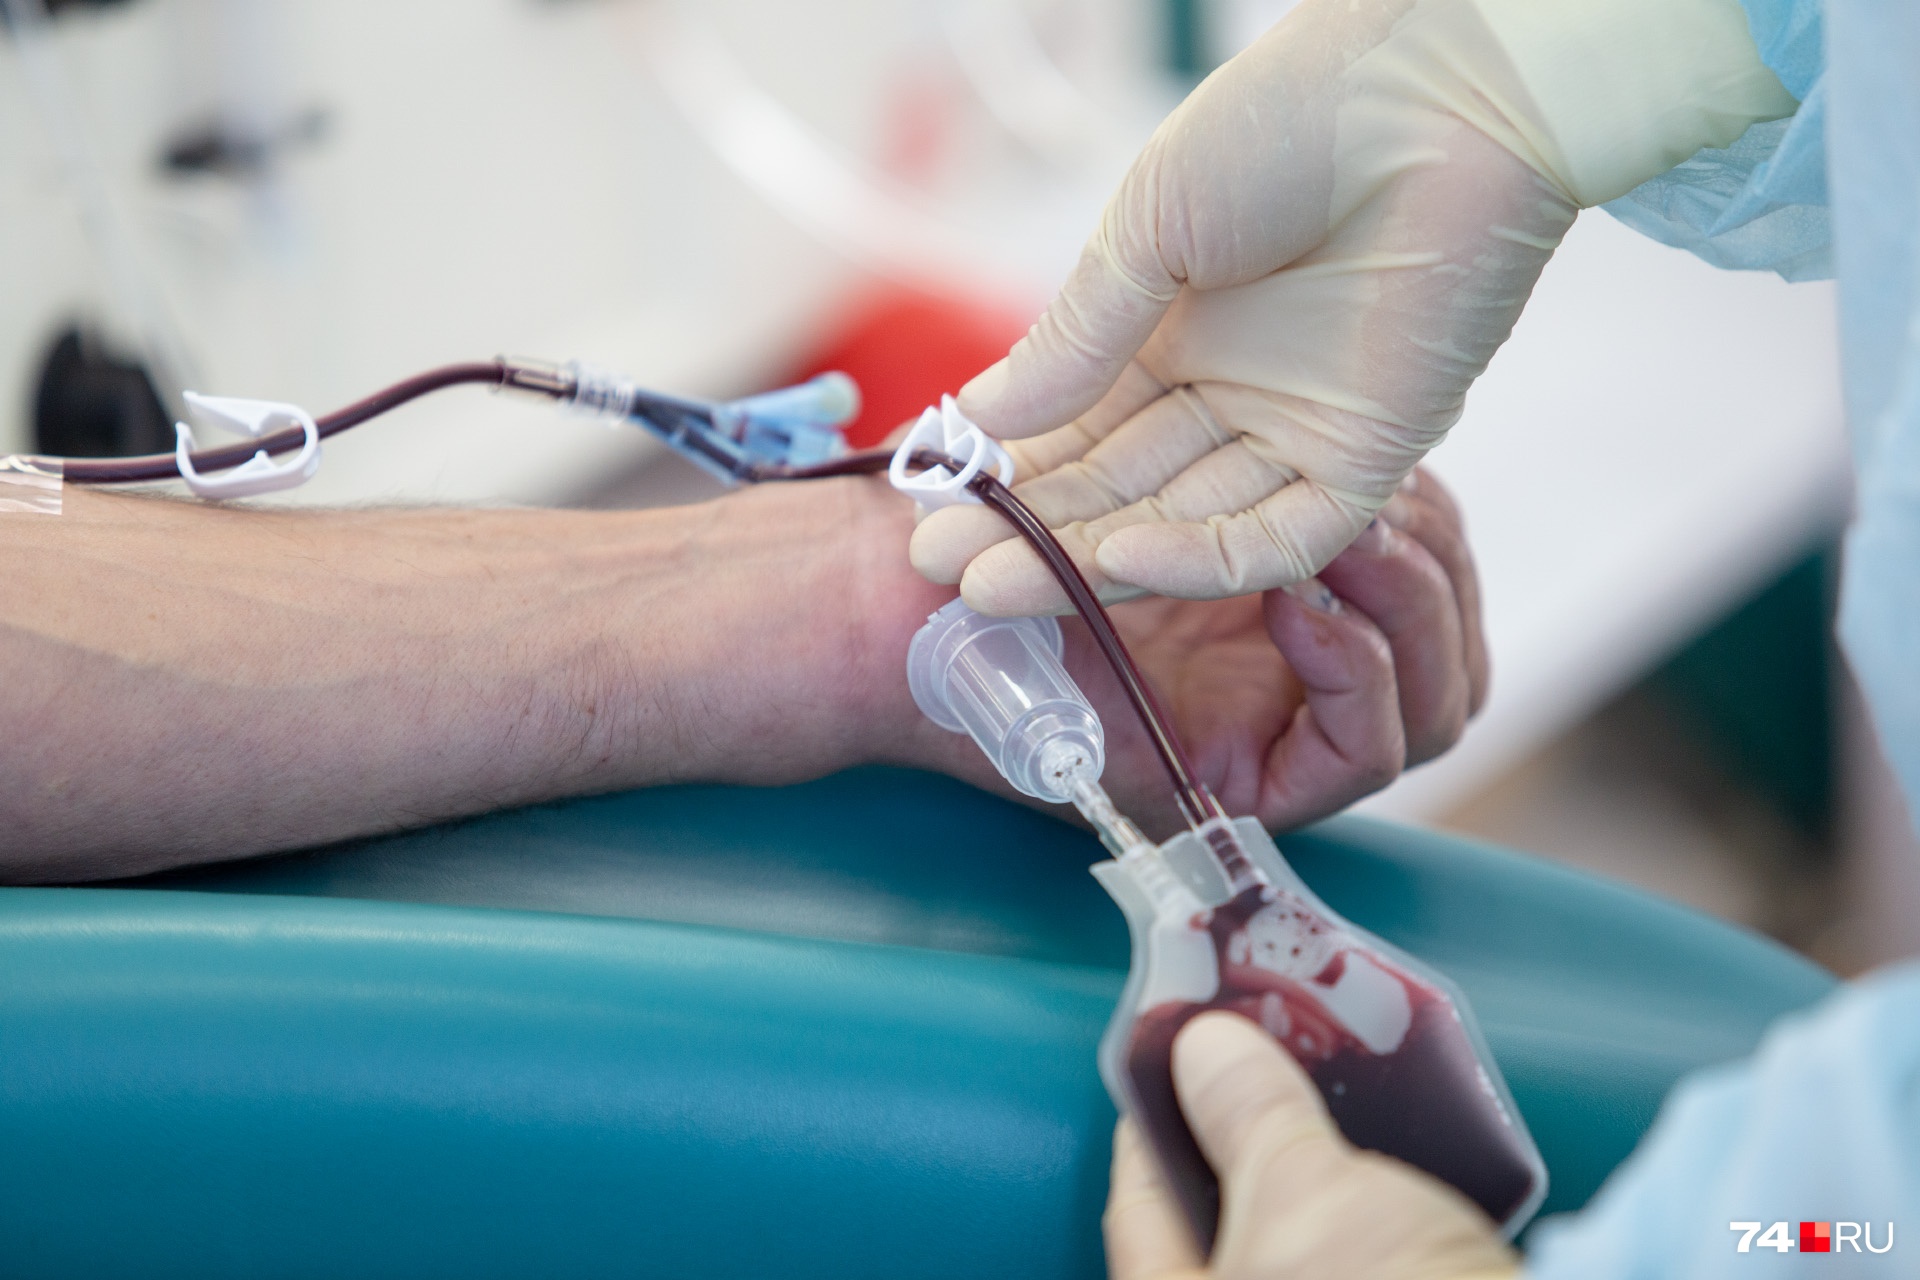 Четвёртая отрицательная группа крови встречается редко, но и доноров с такой кровью меньше всего